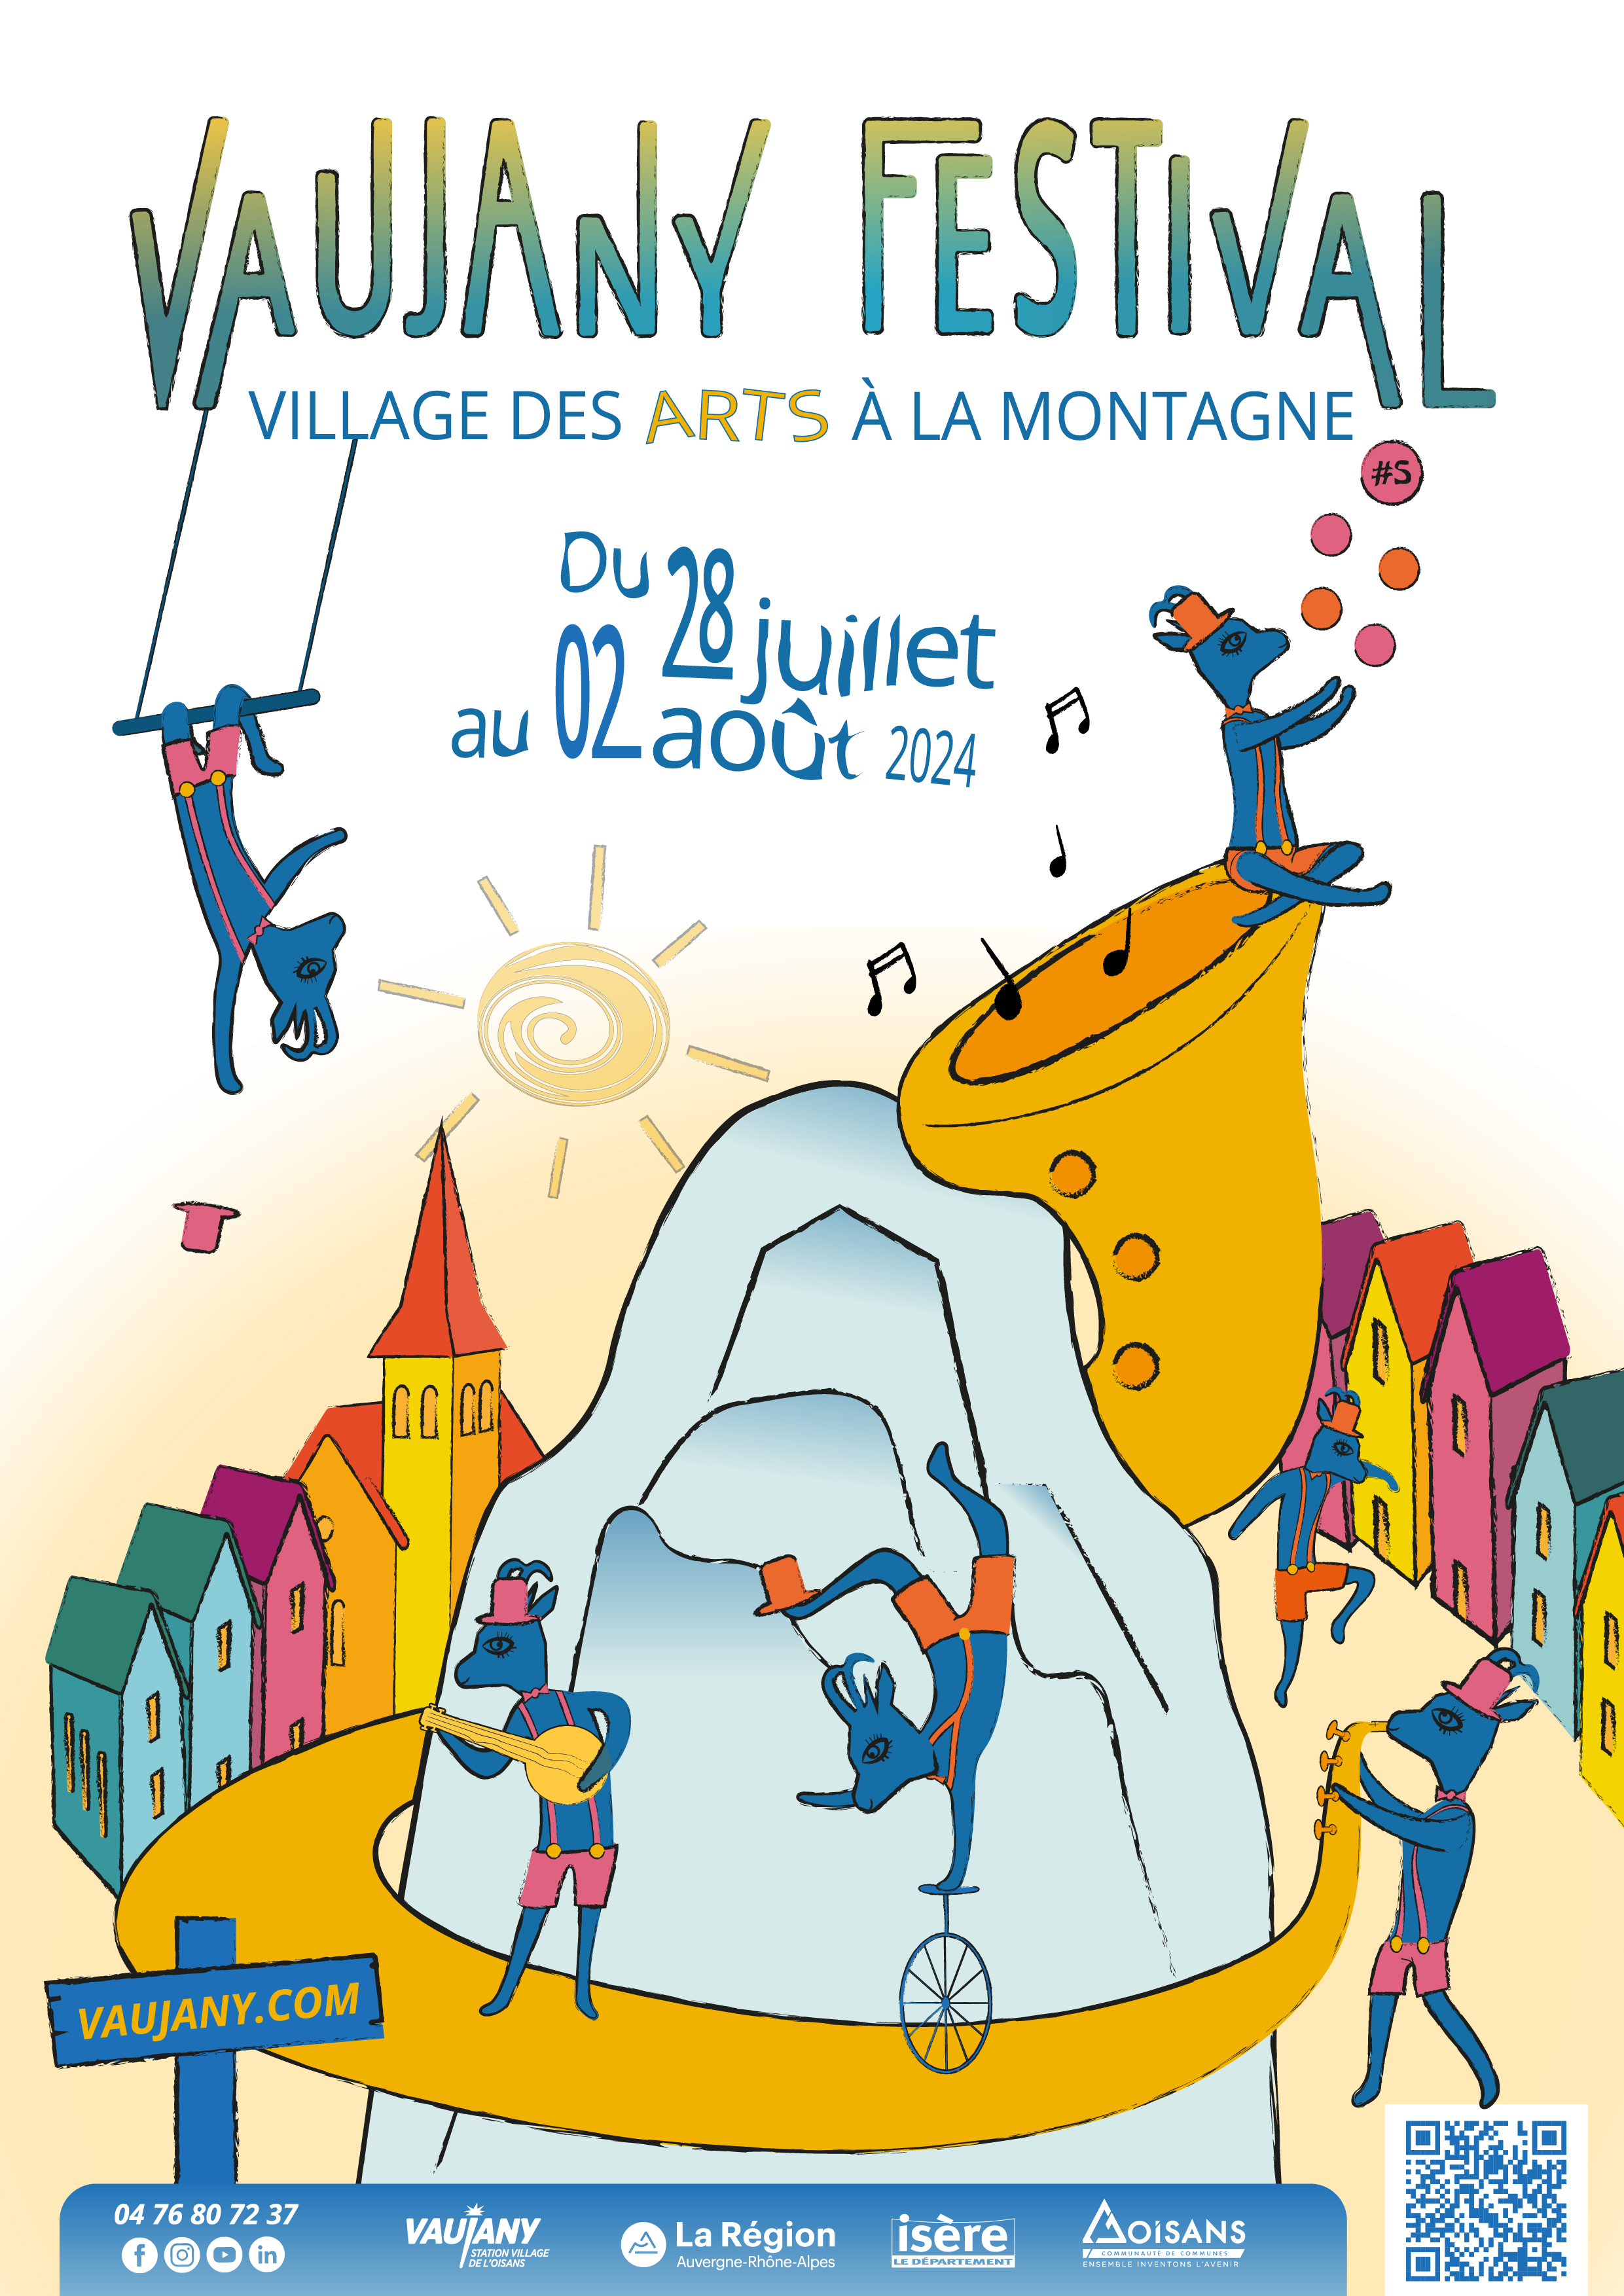 Vaujany festival, village des Arts à la montagne.